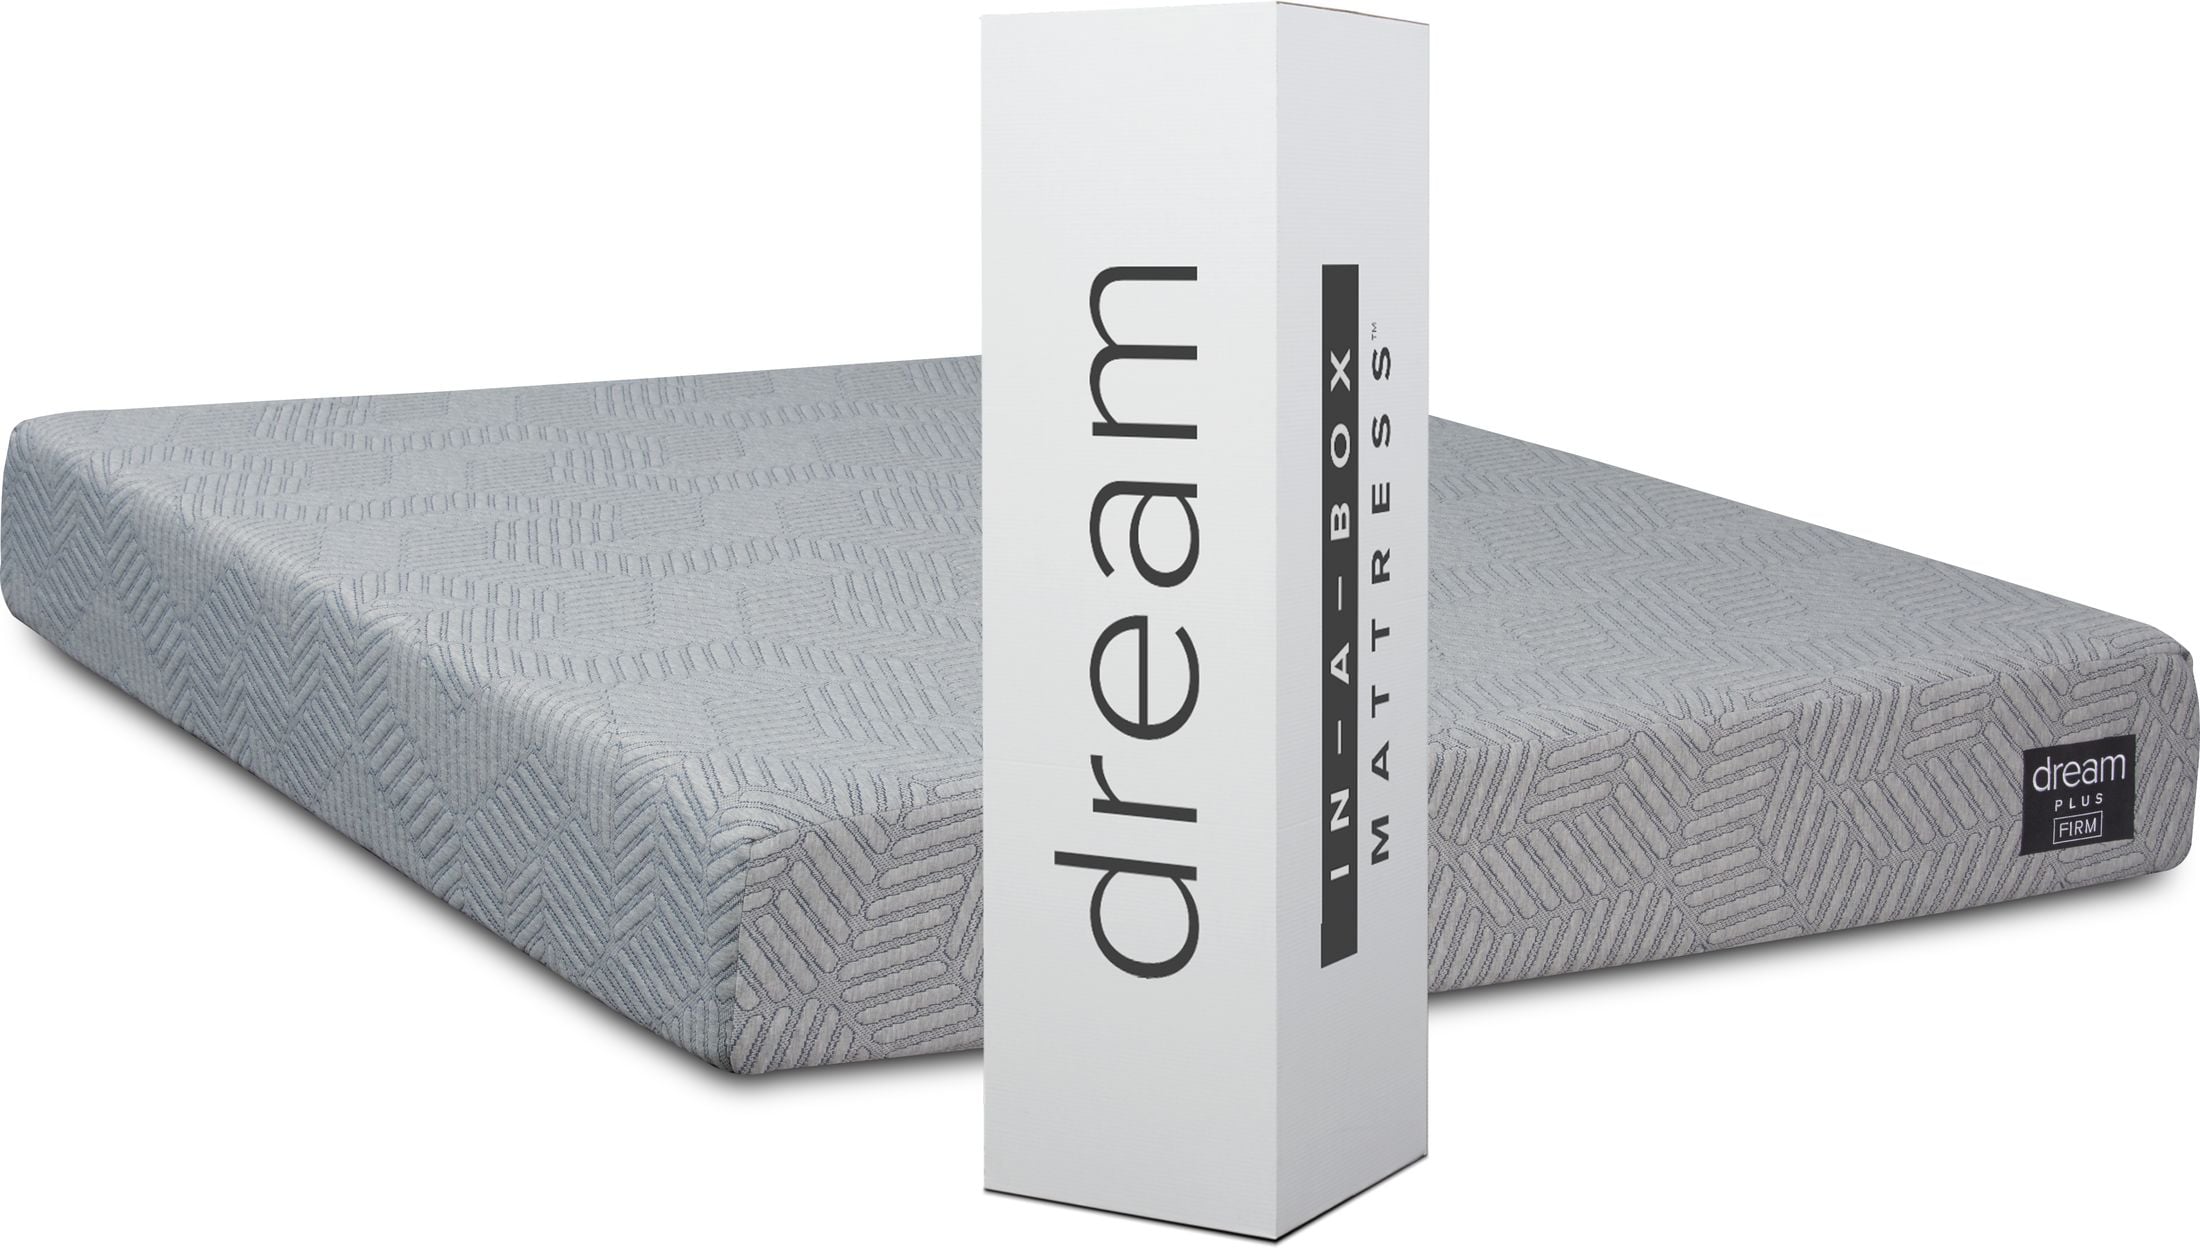 dream classic mattress fantastic furniture